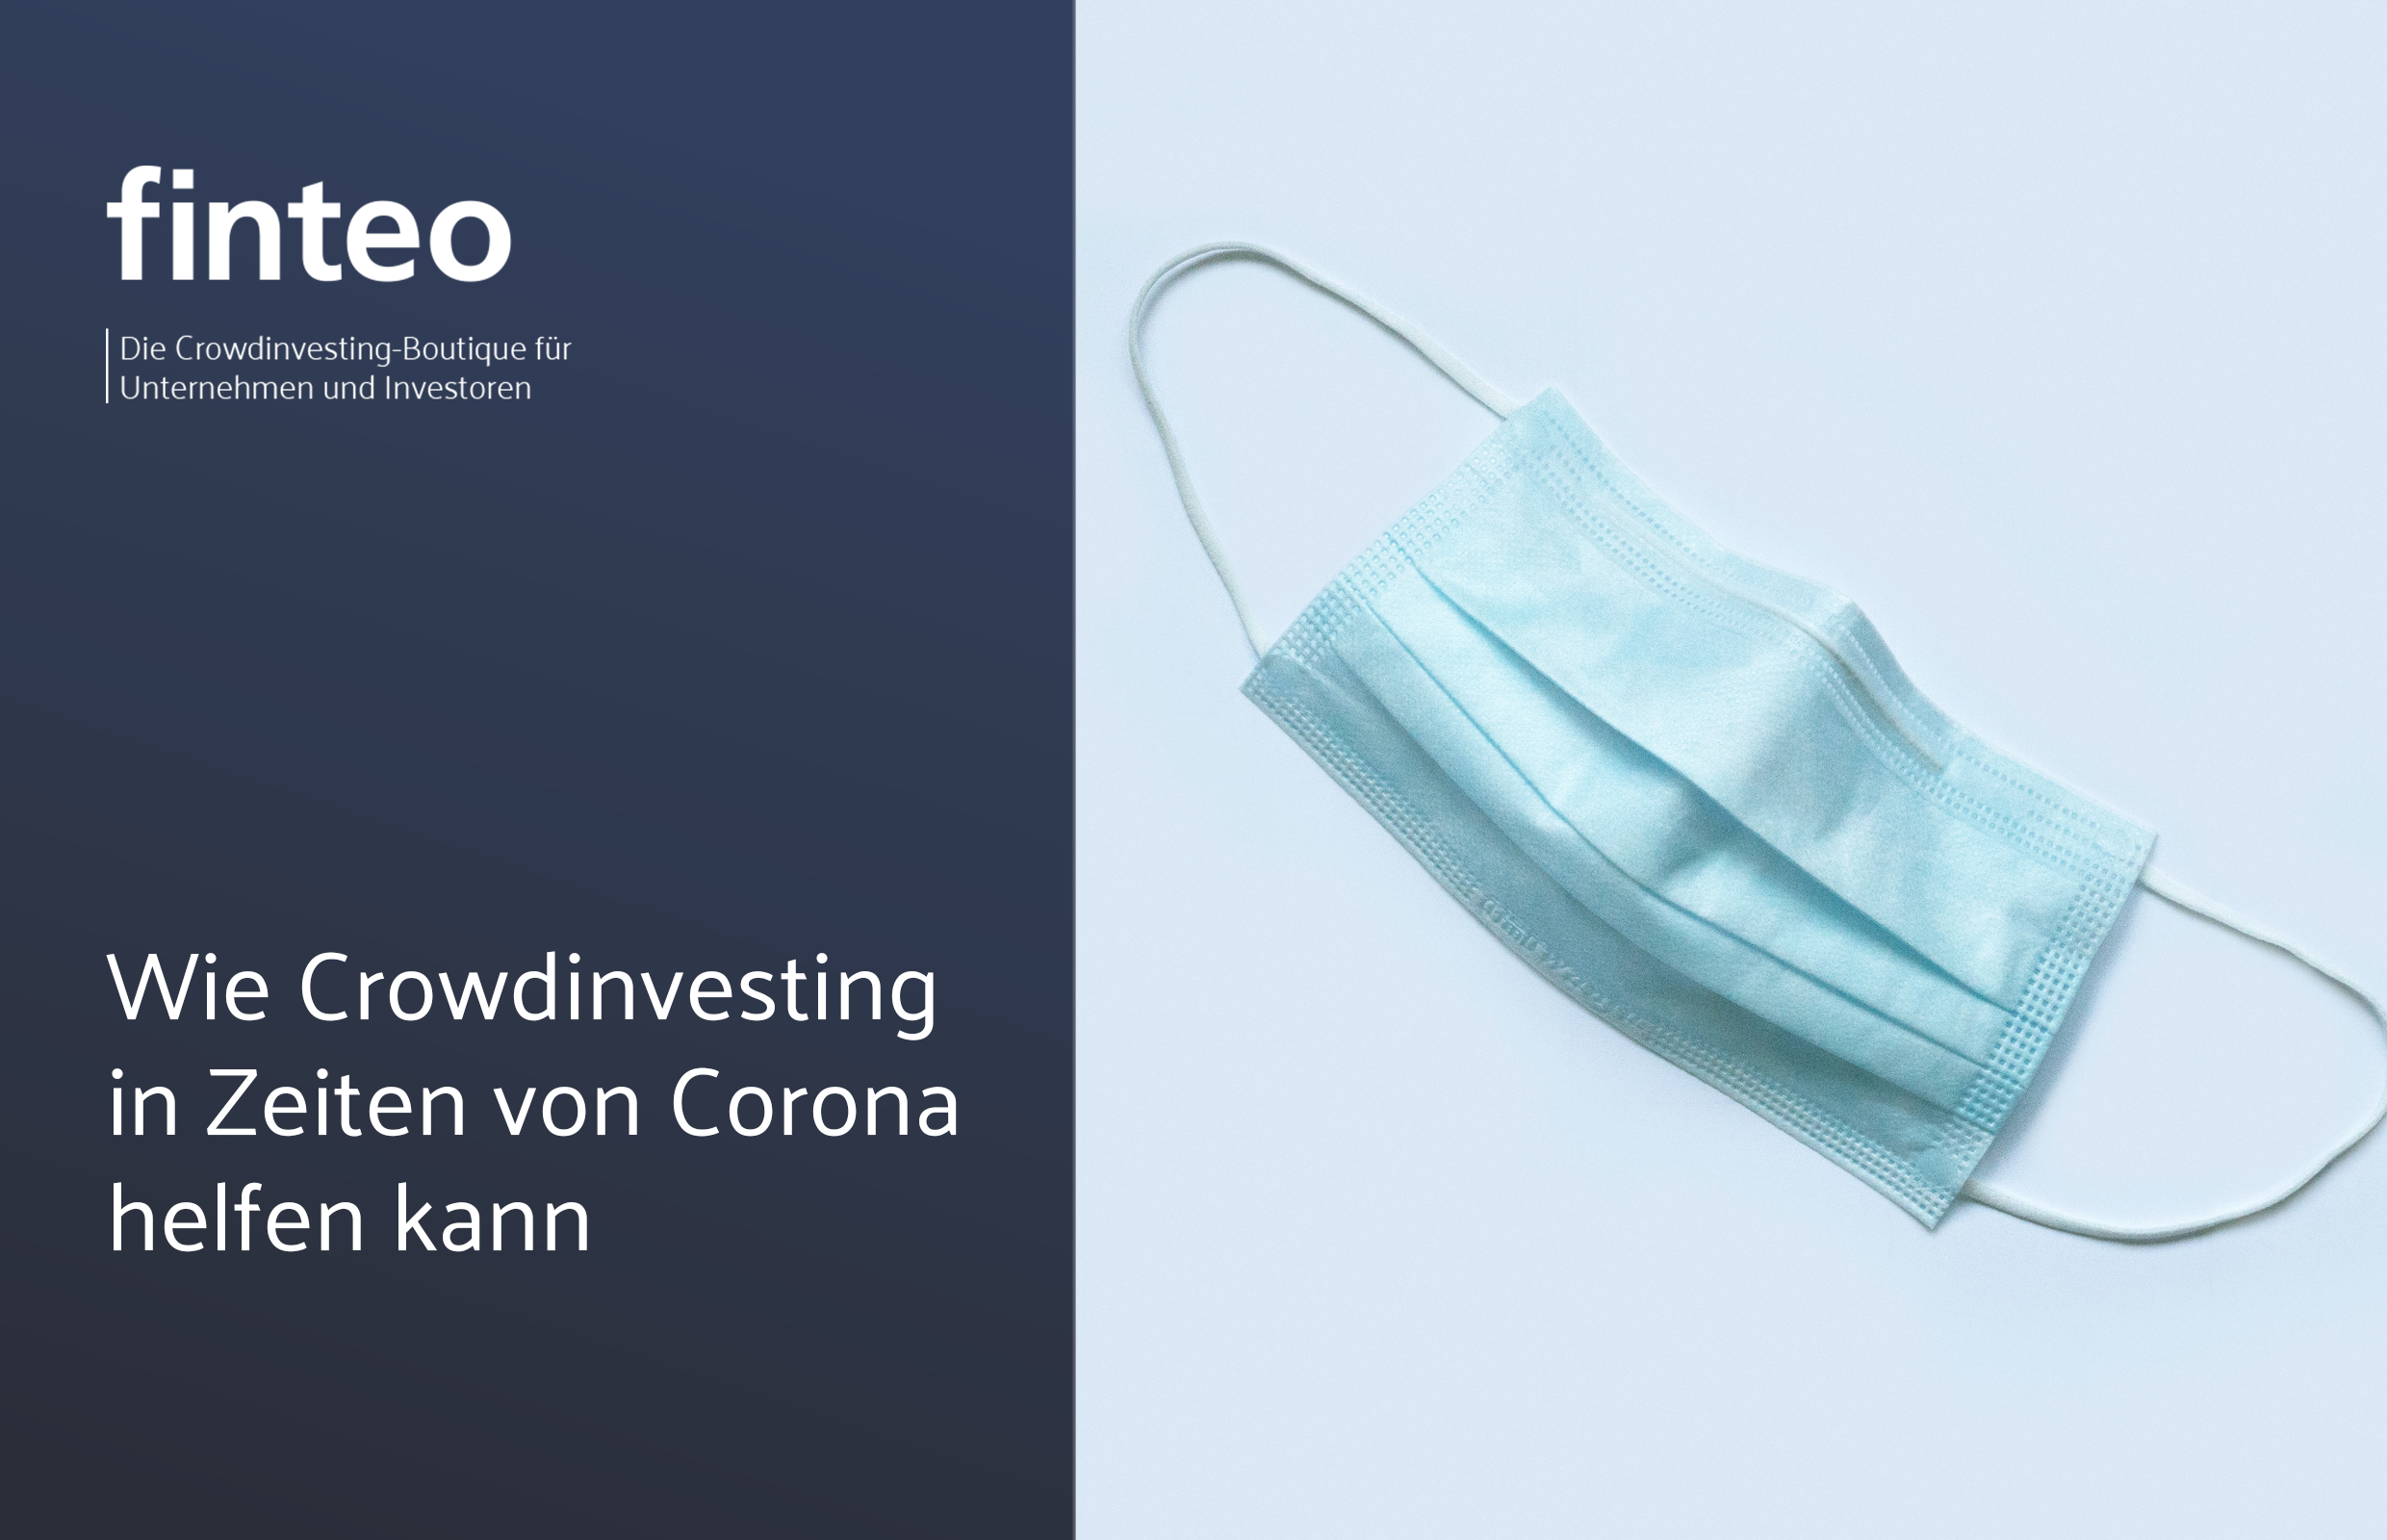 finteo.de | Wie Crowdinvesting Unternehmen in Zeiten von Corona helfen kann - Aqua Protect GmbH